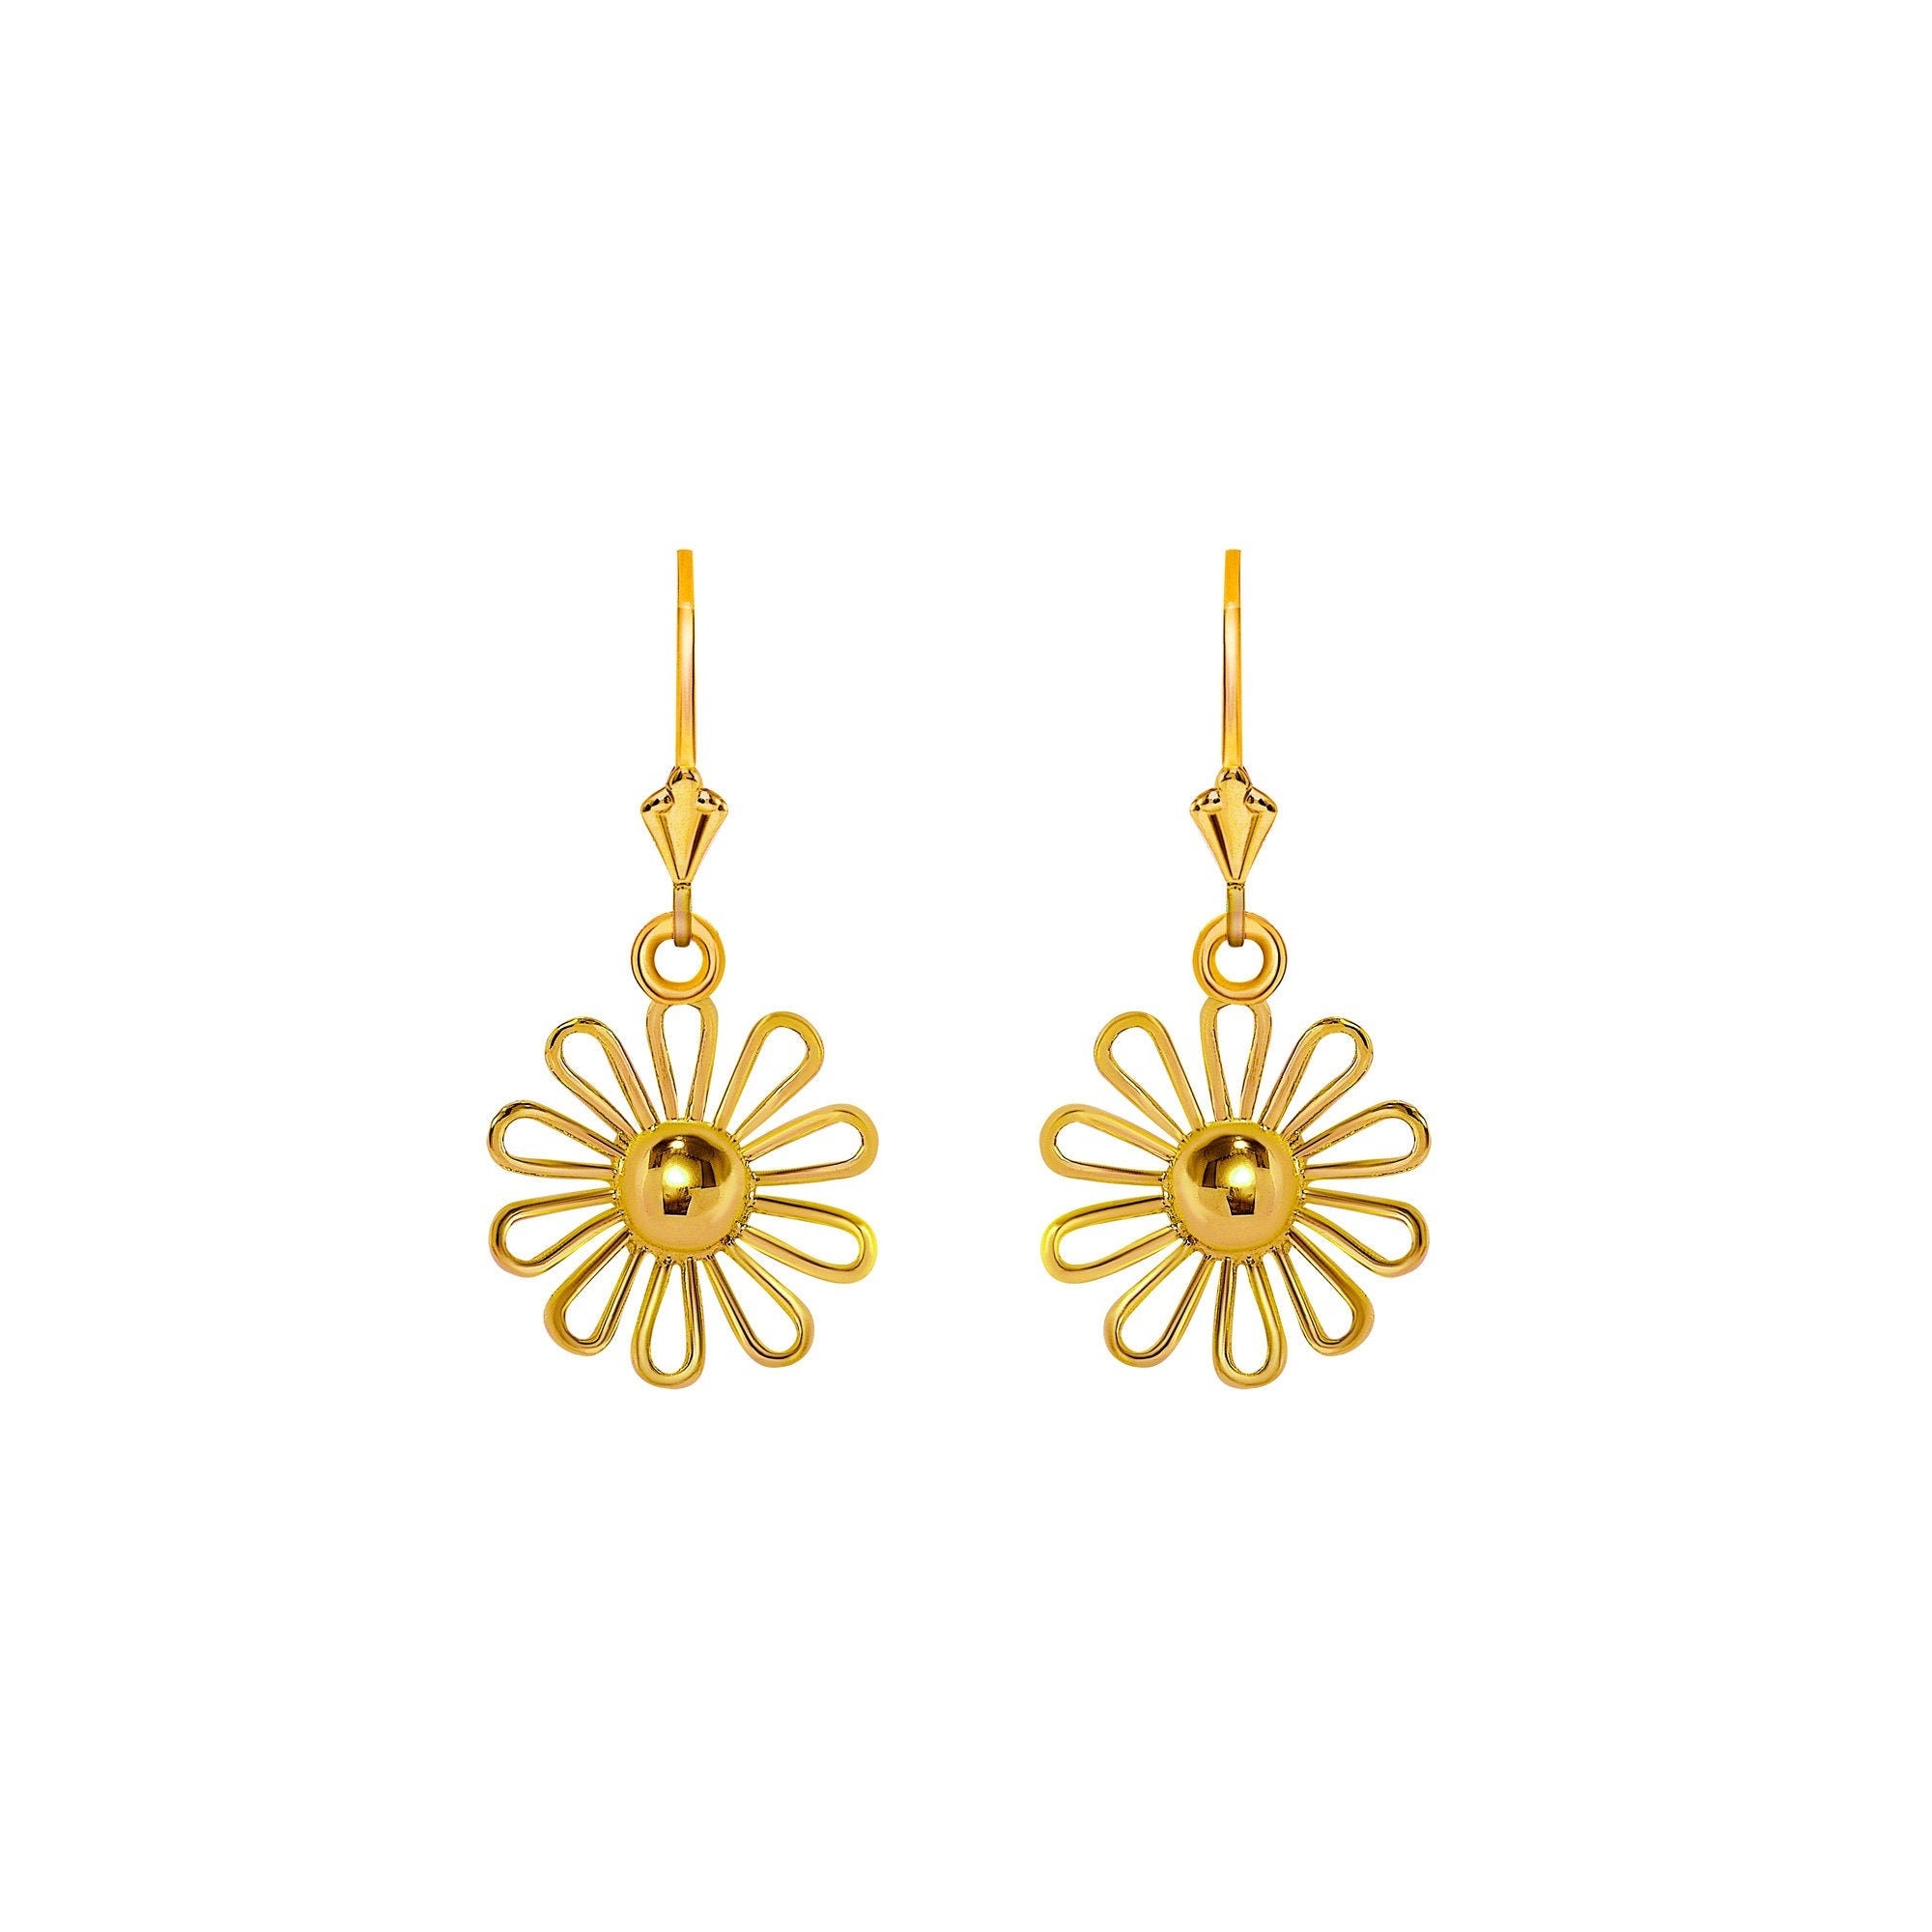 14k solid gold Daisy Flower earrings on fleur de lis leverbacks